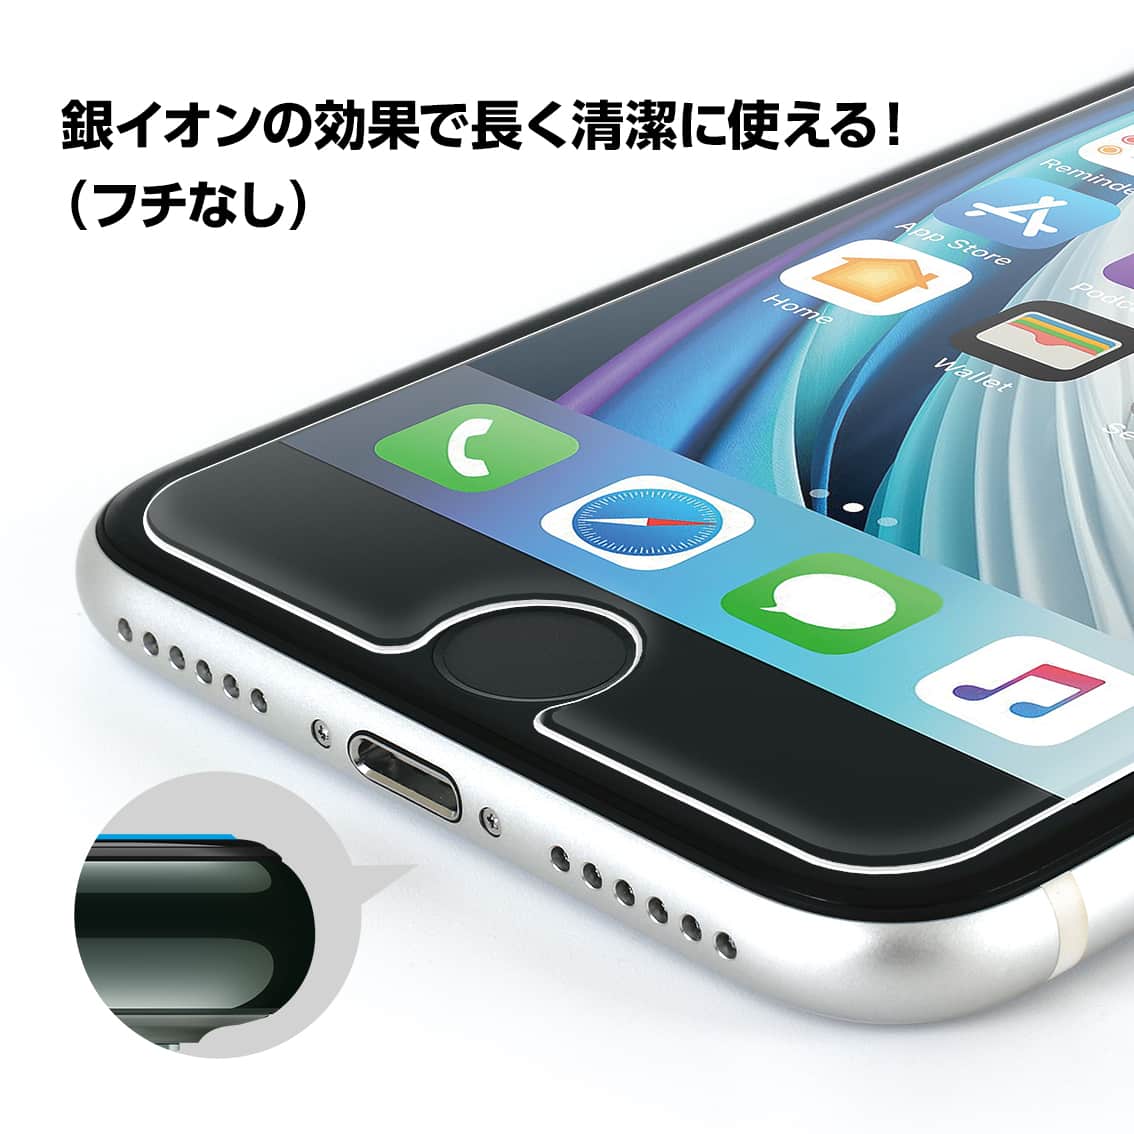 iPhone SE（第2世代）/8/7 液晶保護 ガラスフィルム GKI16-30A 抗菌 アンチグレア ブルーライトカット 0.3mm